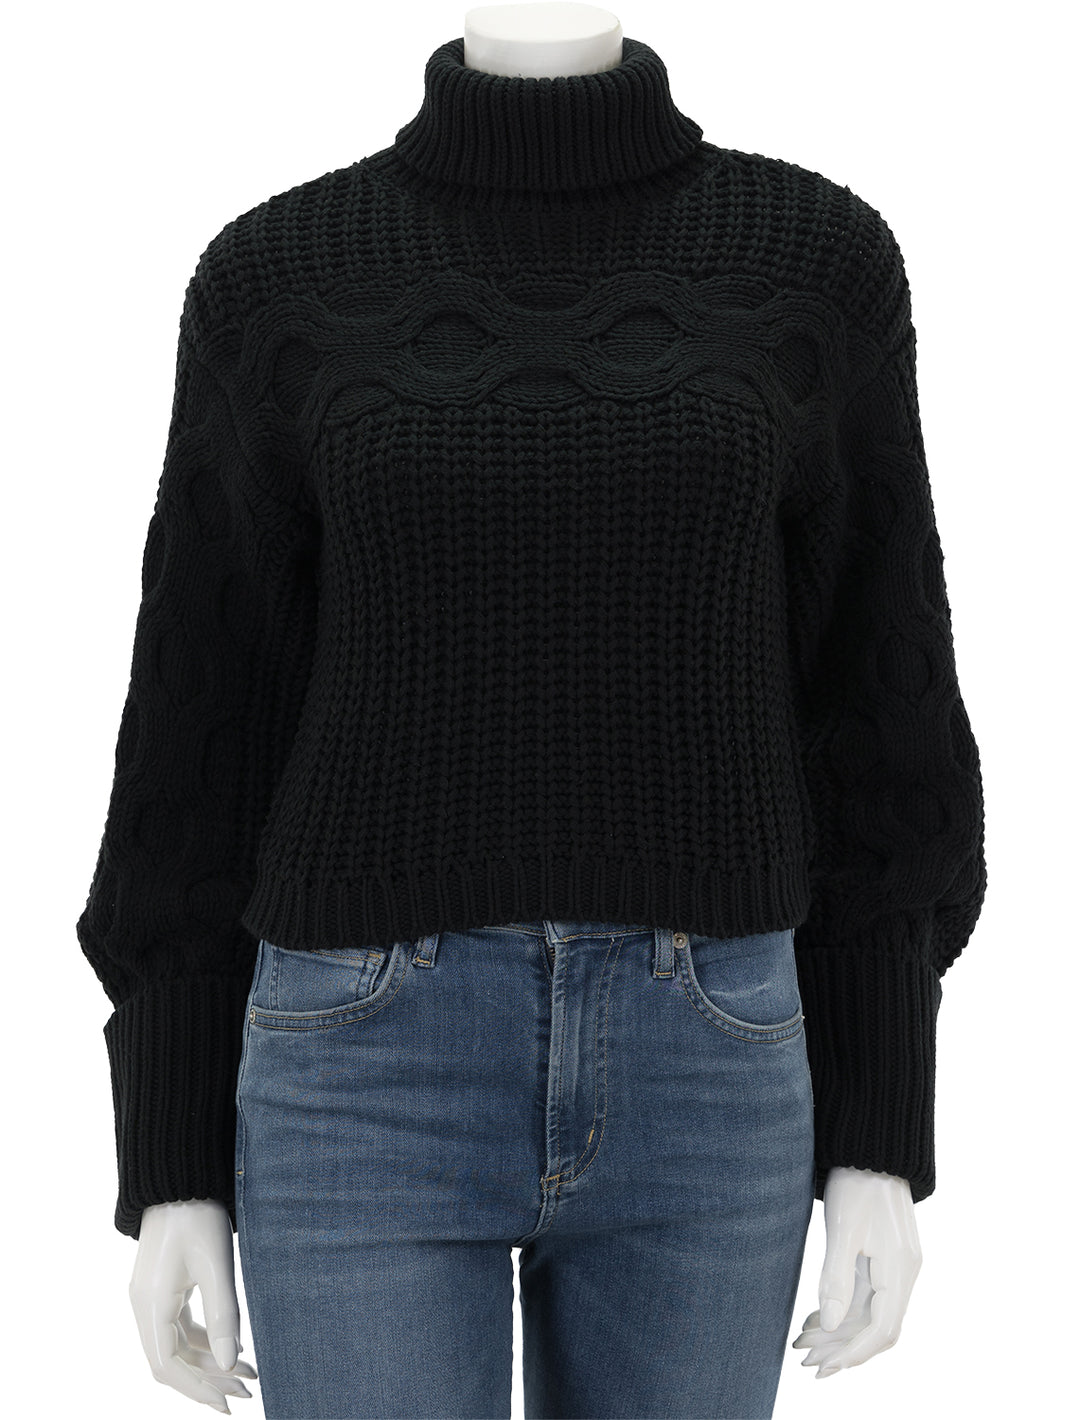 Front view of STAUD's vernacular sweater in black.